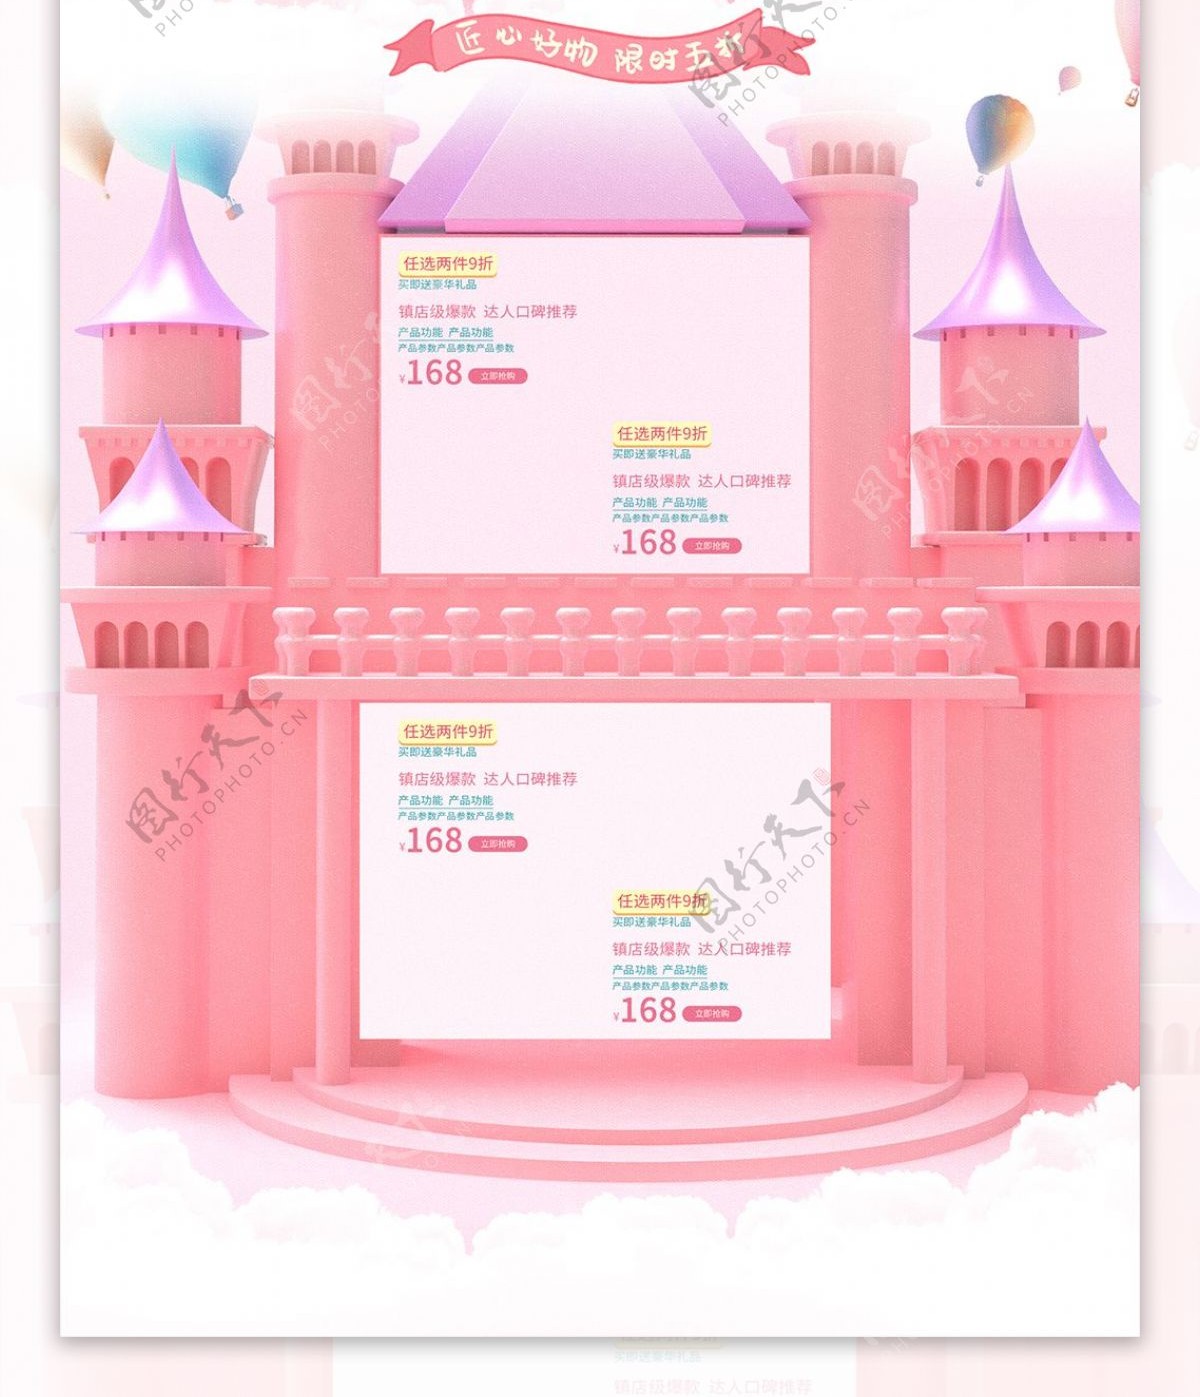 粉色梦幻电商童梦乐园促销母婴店首页模板